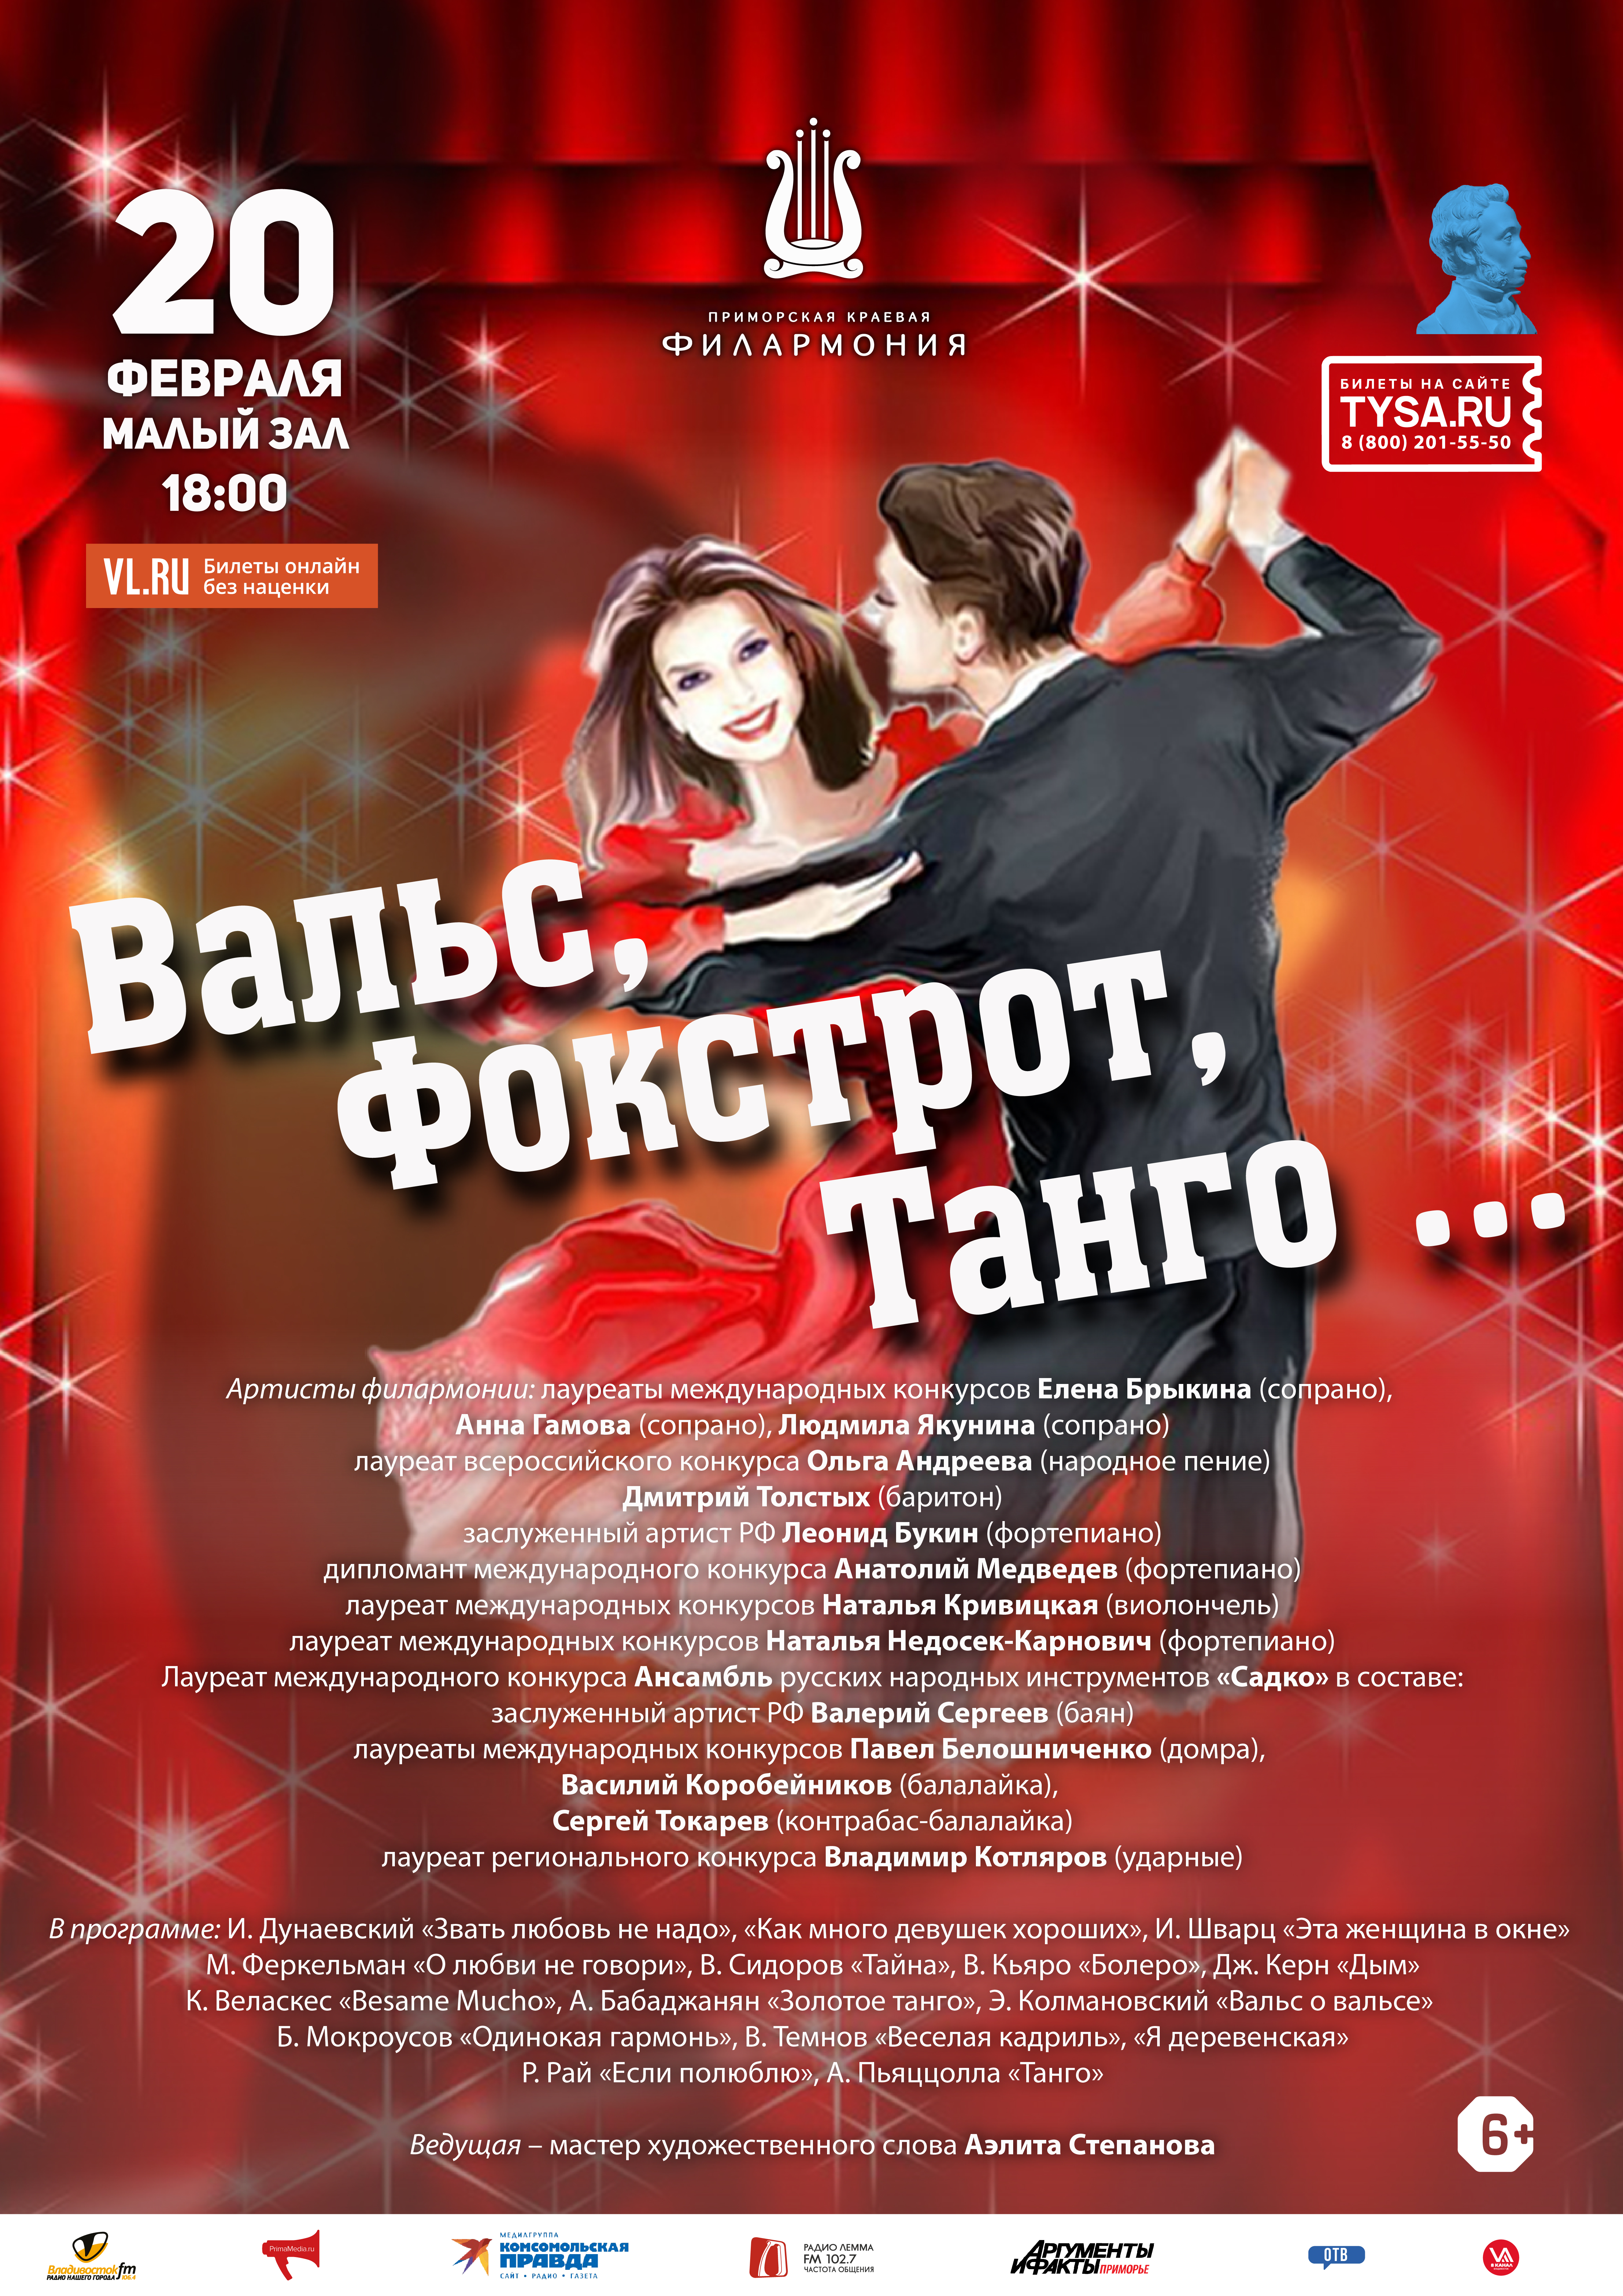 20 февраля Концертная программа «Вальс, Фокстрот, Танго ...»